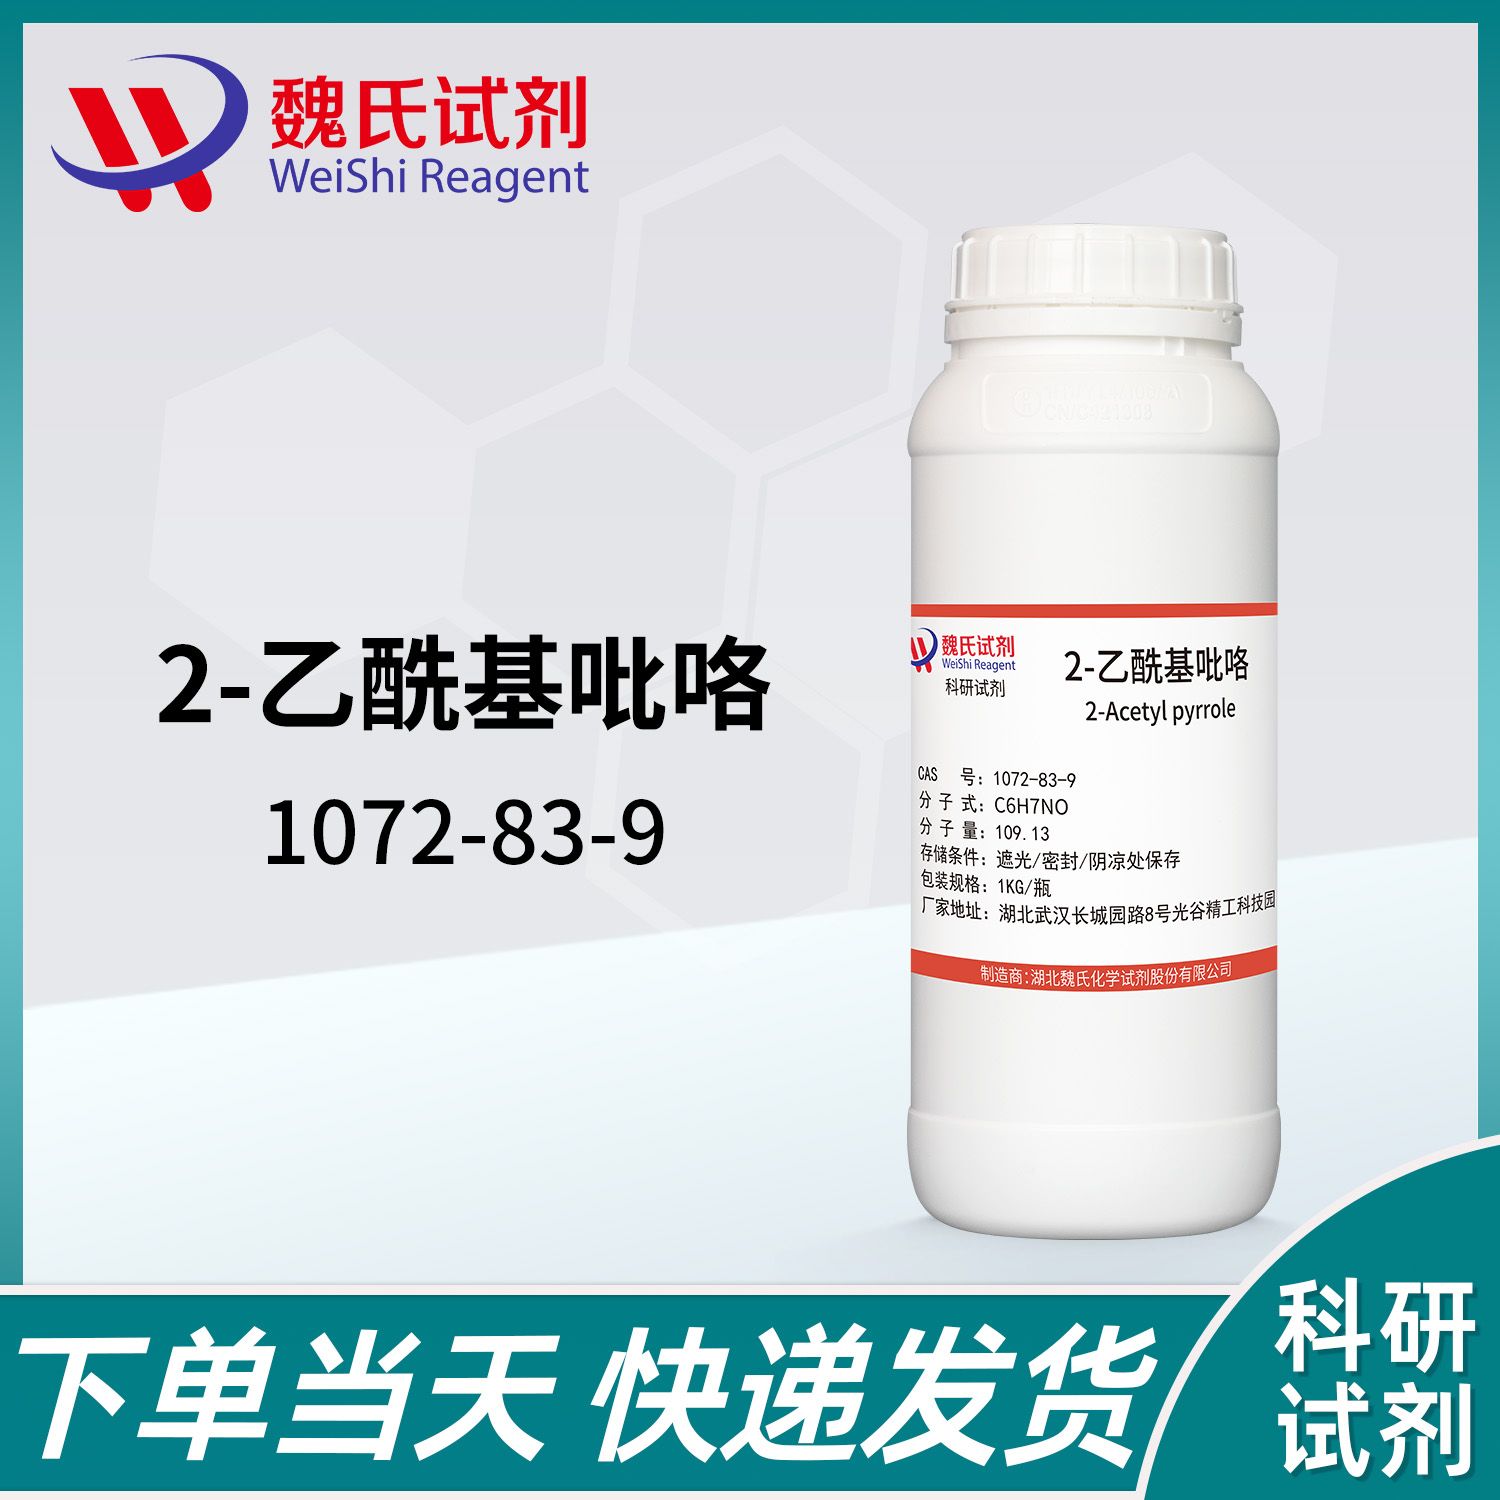 1072-83-9—2-acetylpyrrole